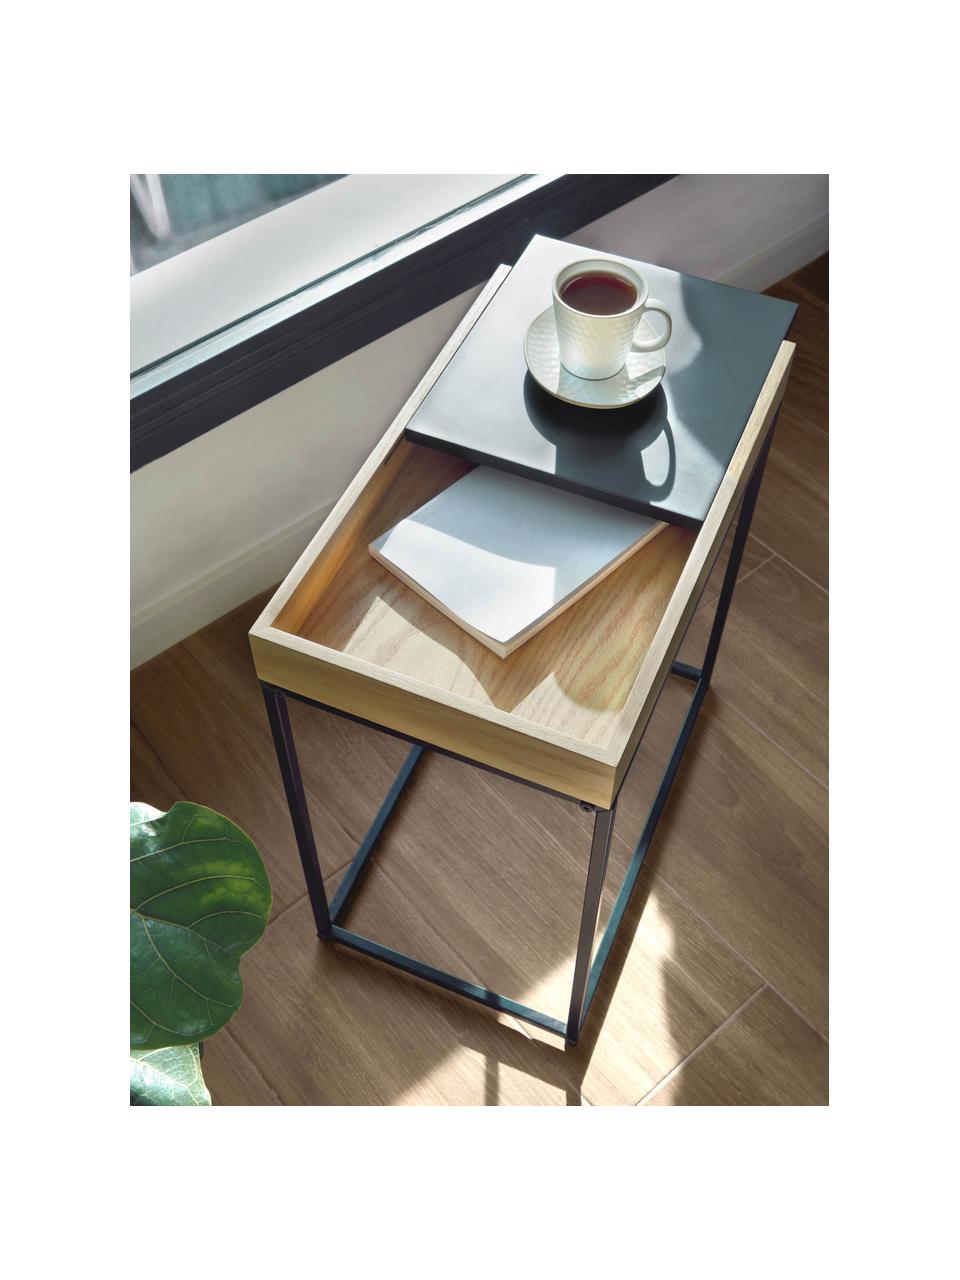 Pomocný stolík s posuvným vrchnákom Detail, Dubové drevo, čierna, Š 50 x H 30 cm